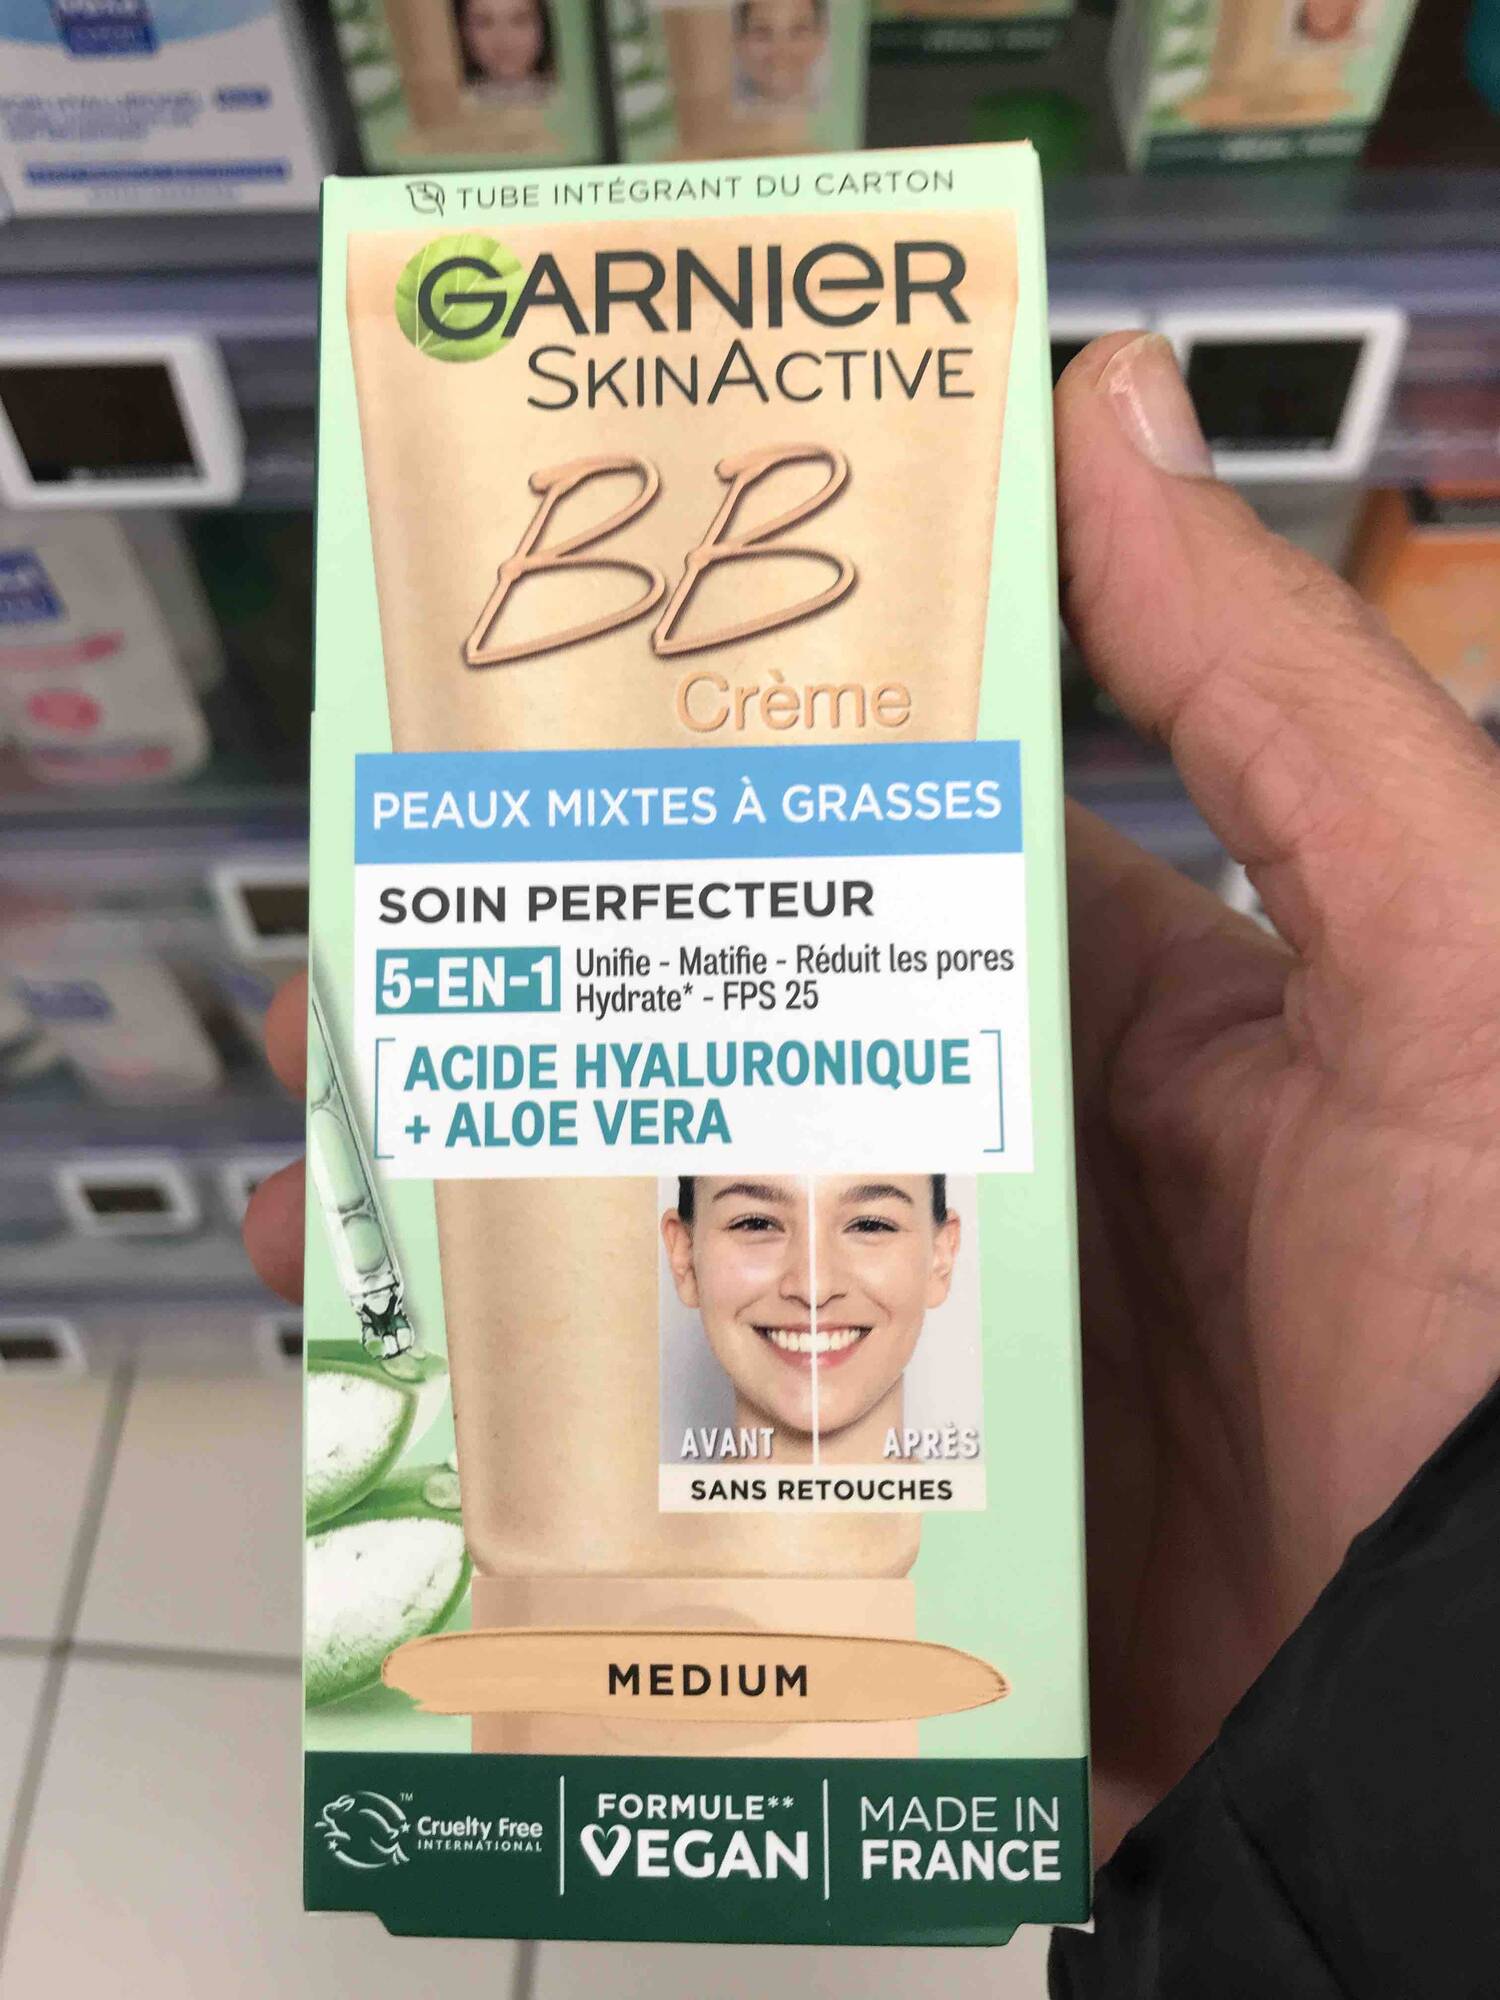 GARNIER - Soin perfecteur - BB crème